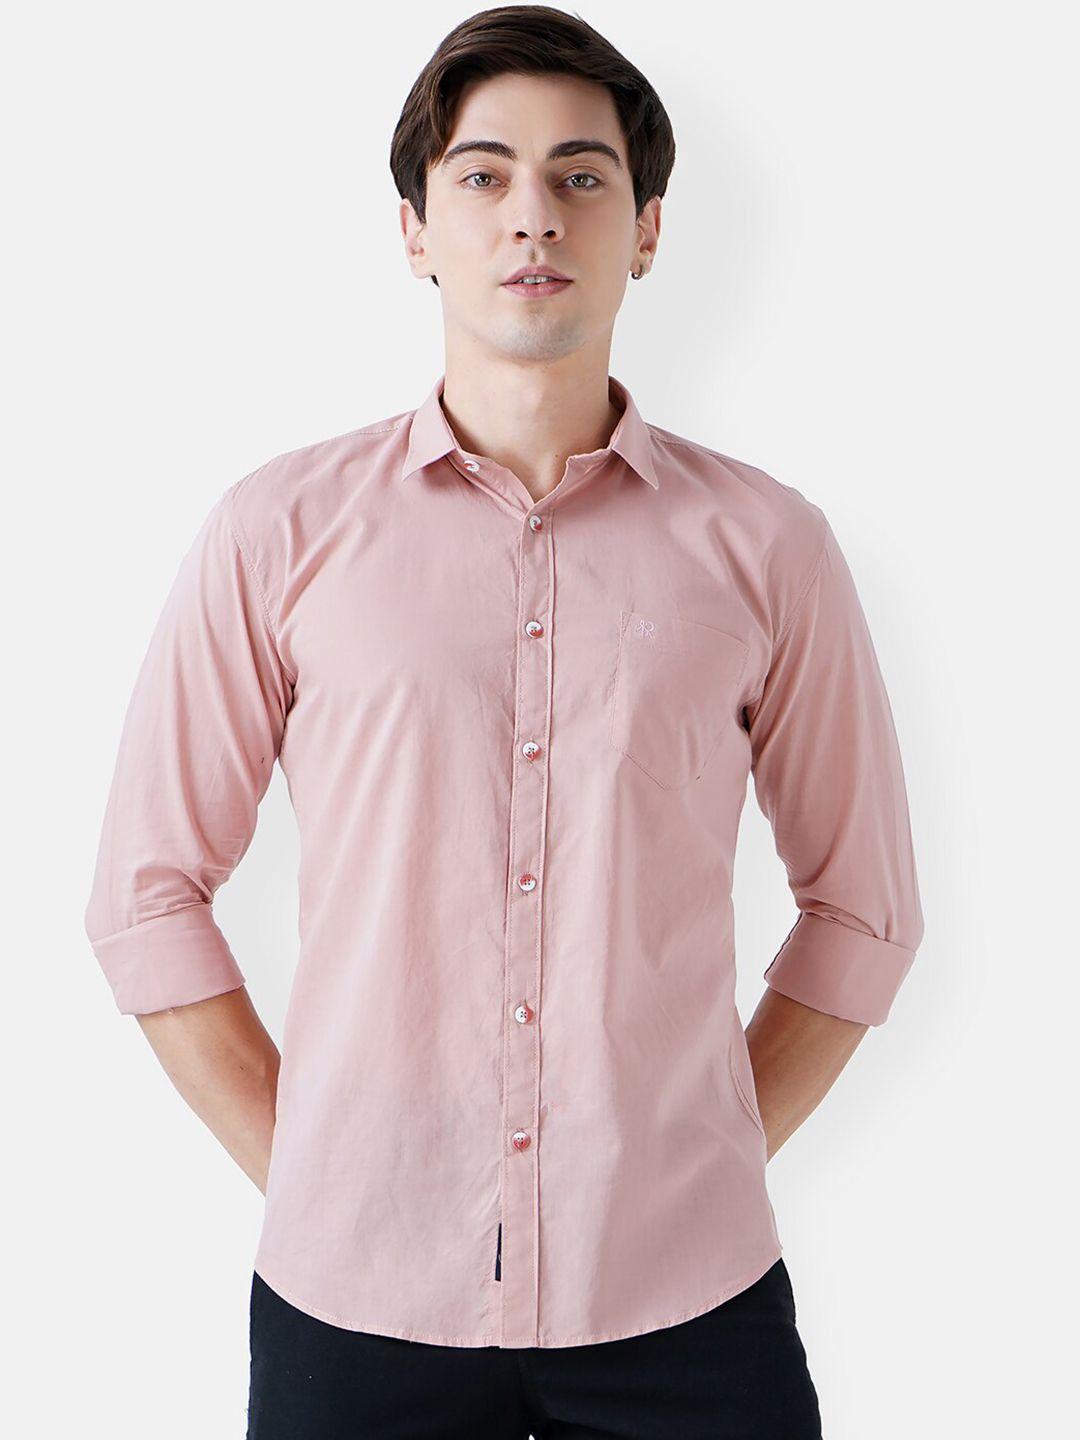 soratia men pink slim fit casual shirt